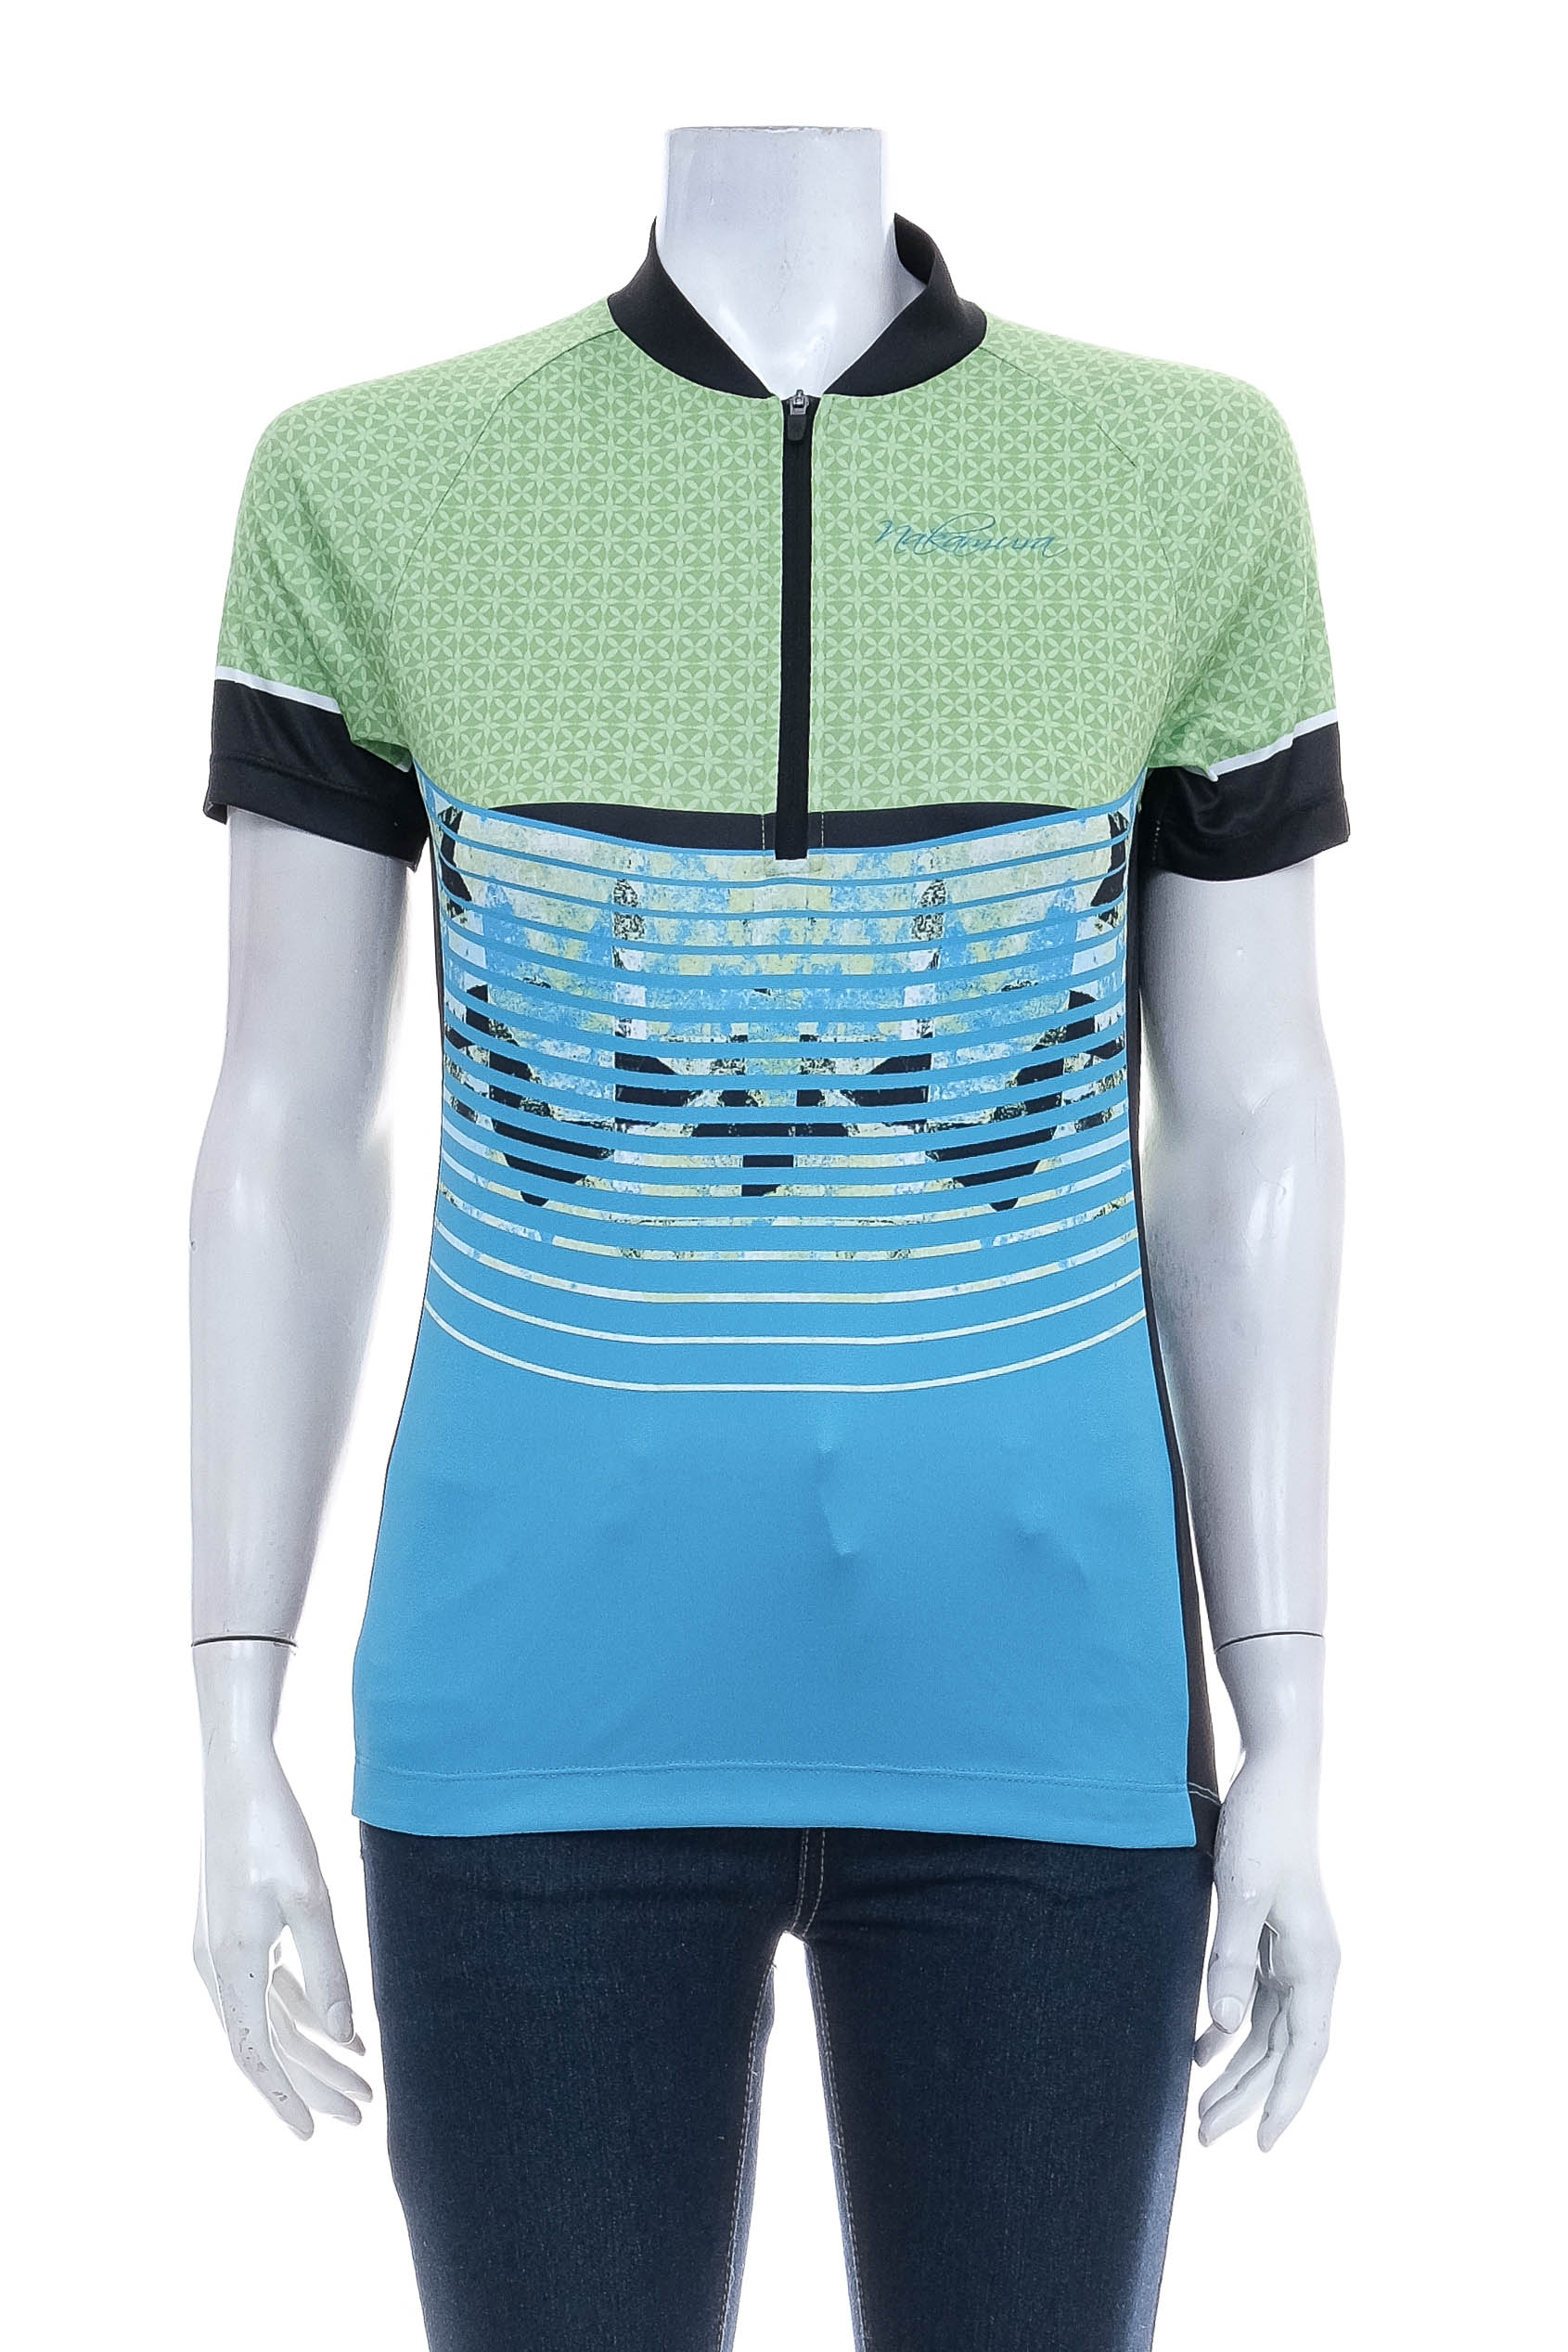 Women's t-shirt for cycling - Nakamura - 0